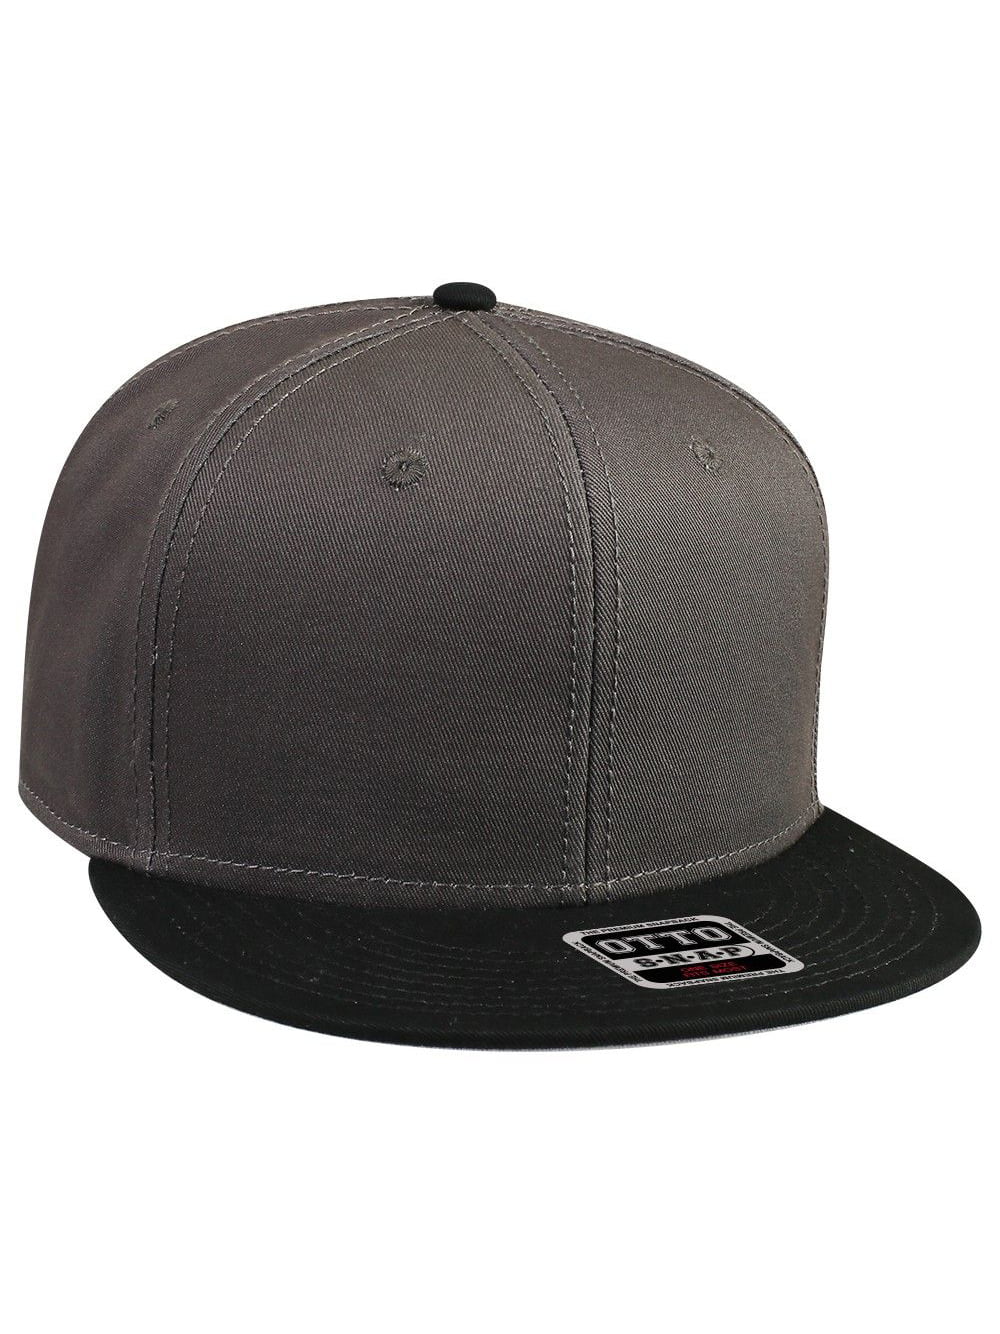 Cotton Twill Flat Bill 6 Panel Mid Profile Snapback Hat, Black